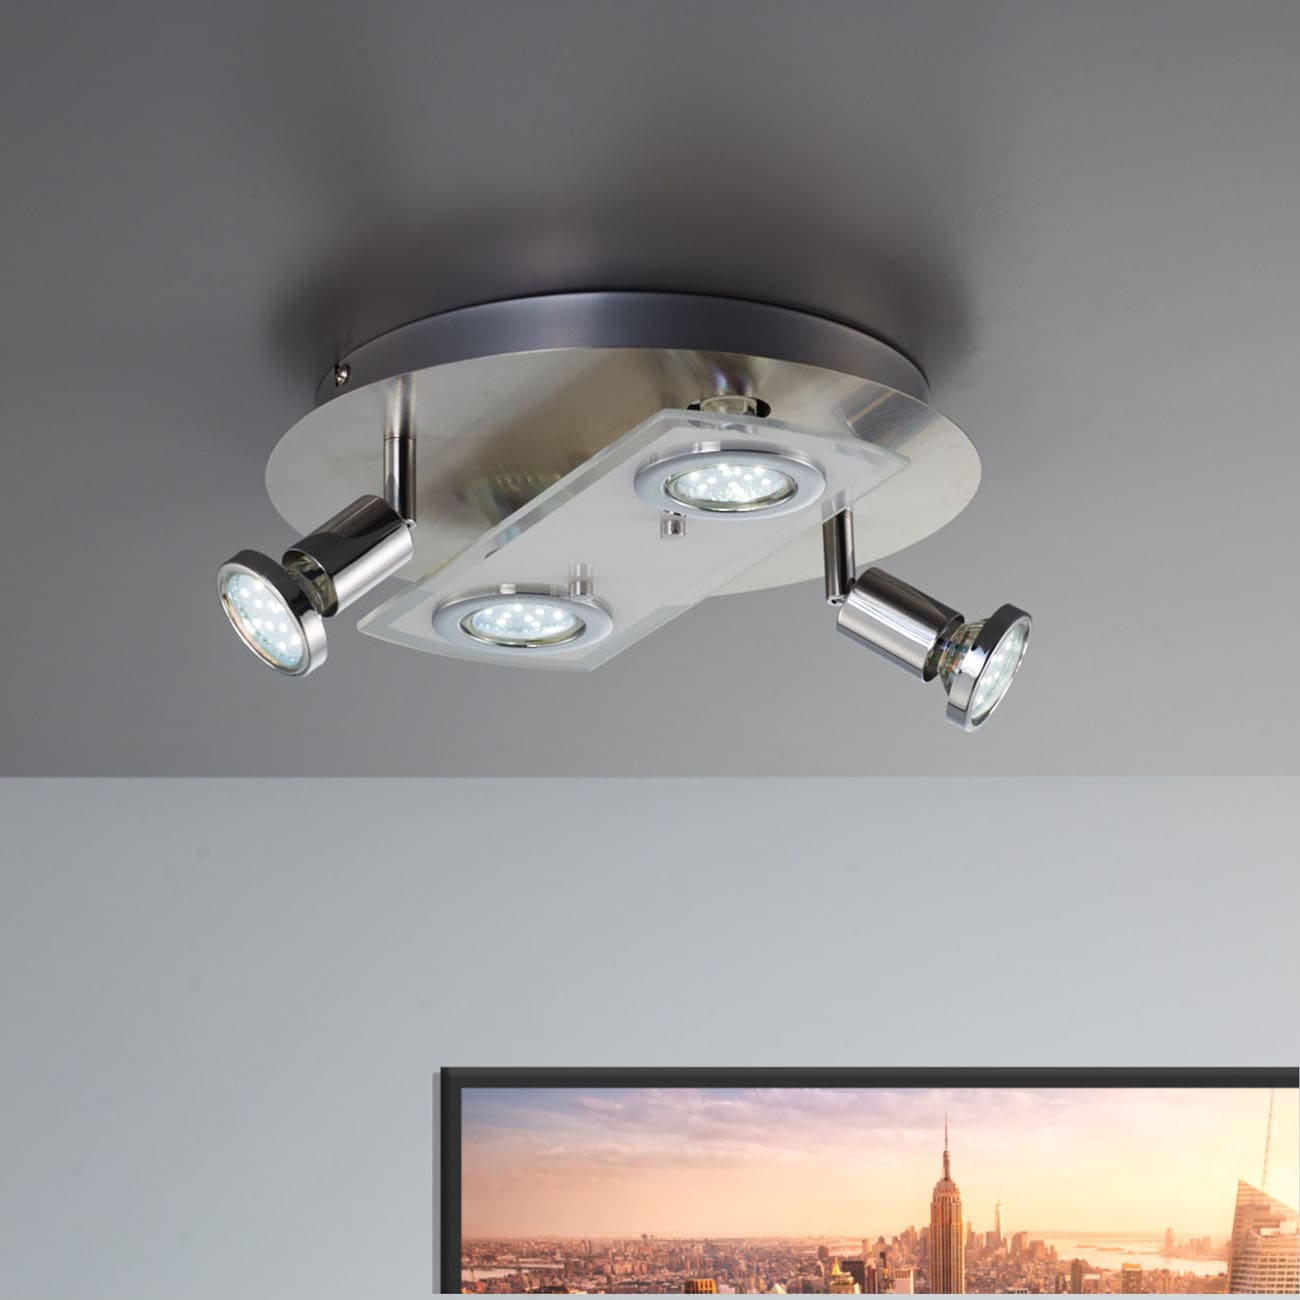 LED Deckenleuchte 29cm - 4-flammig - moderne Deckenlampe 2 Spots schwenkbar Glas Metall GU10 12W 1000lm warmweiß | Matt-Nickel - 2